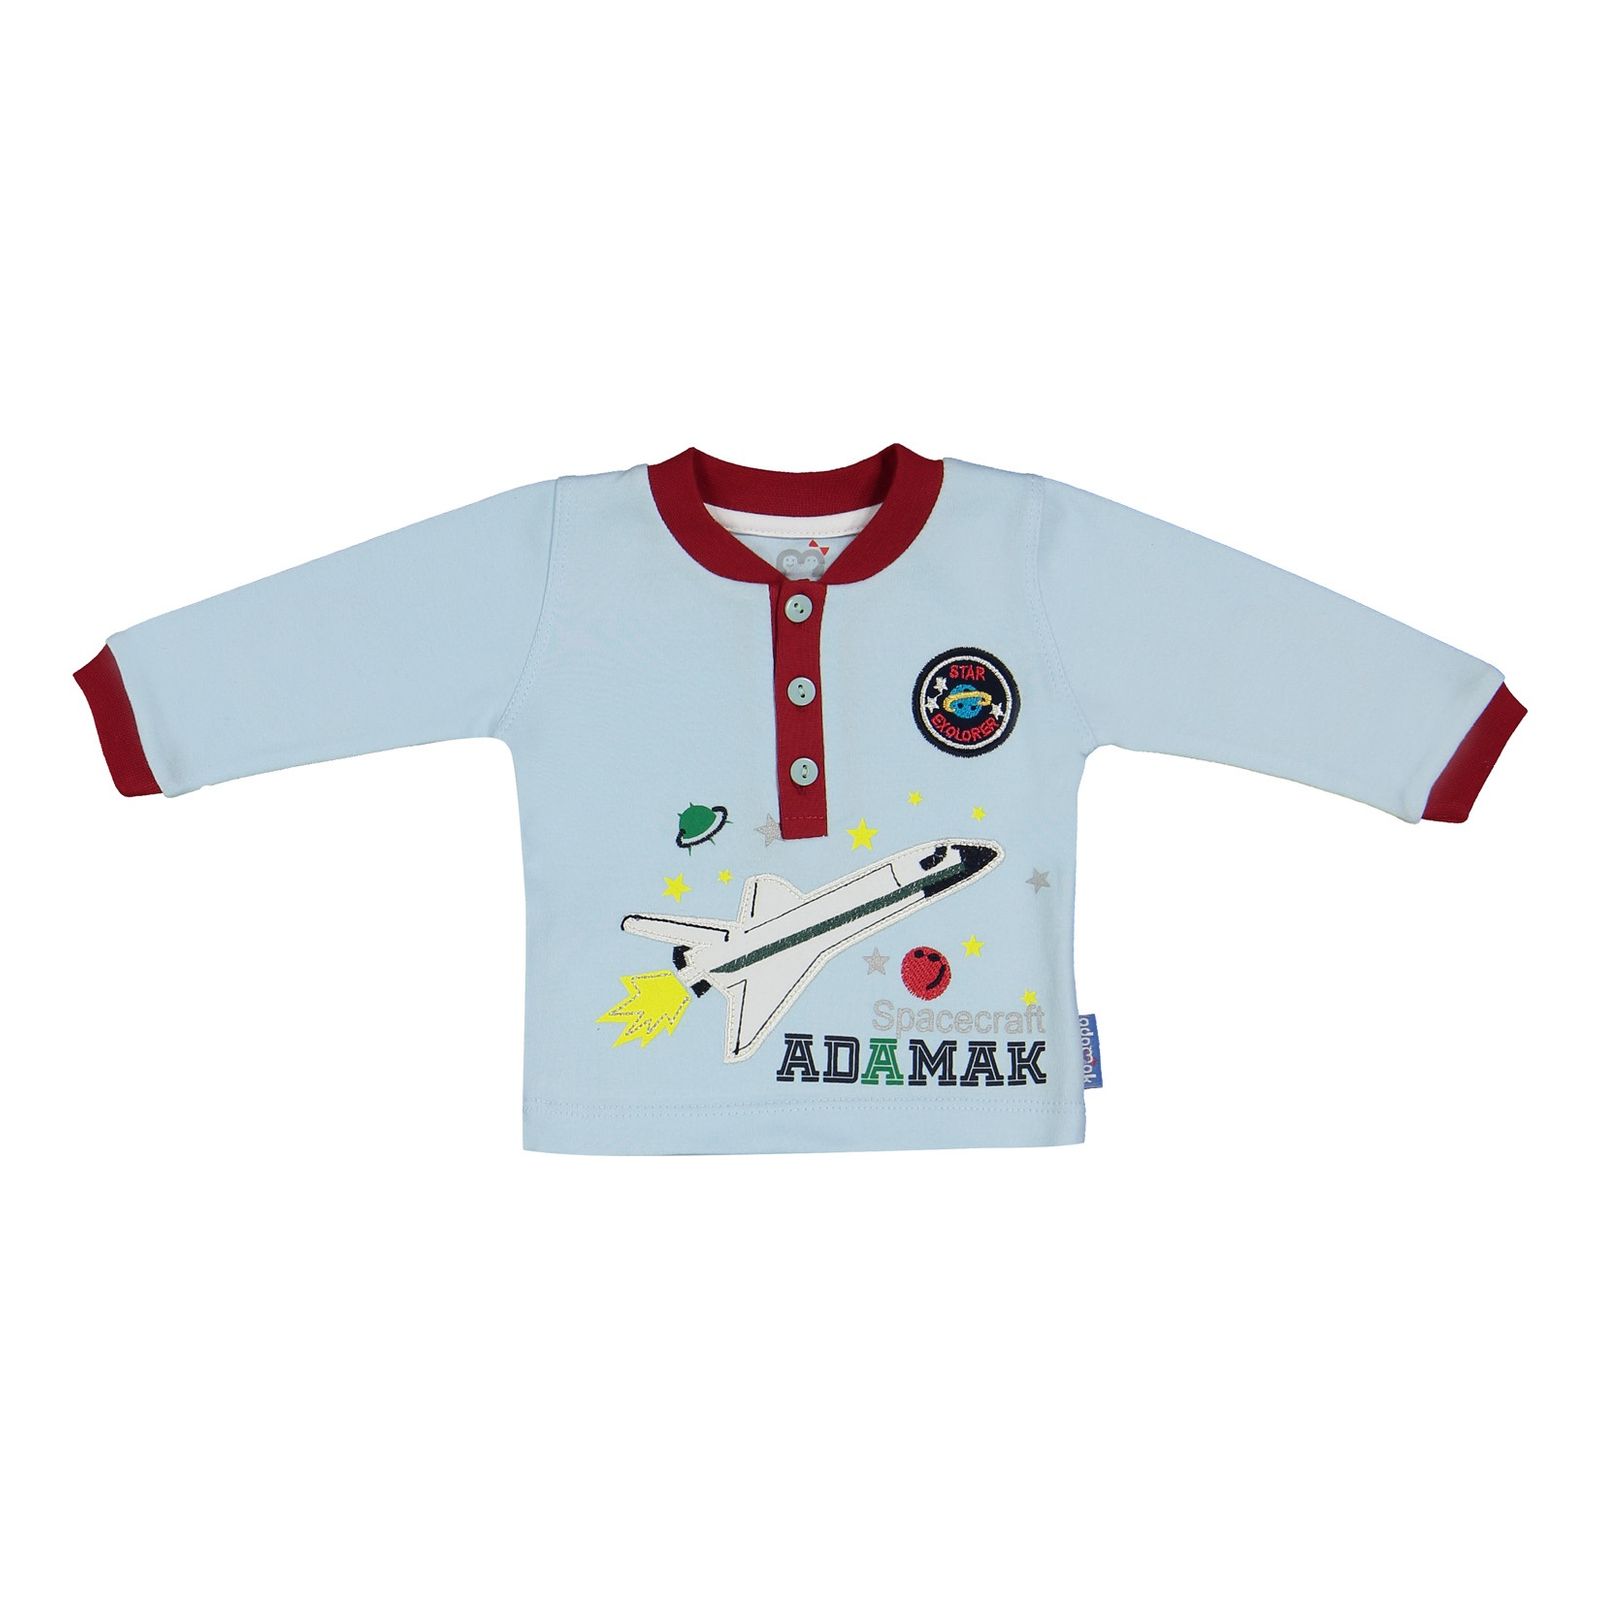 ست تی شرت و شلوار نوزادی آدمک مدل 2171101-50 - آبی روشن - 3